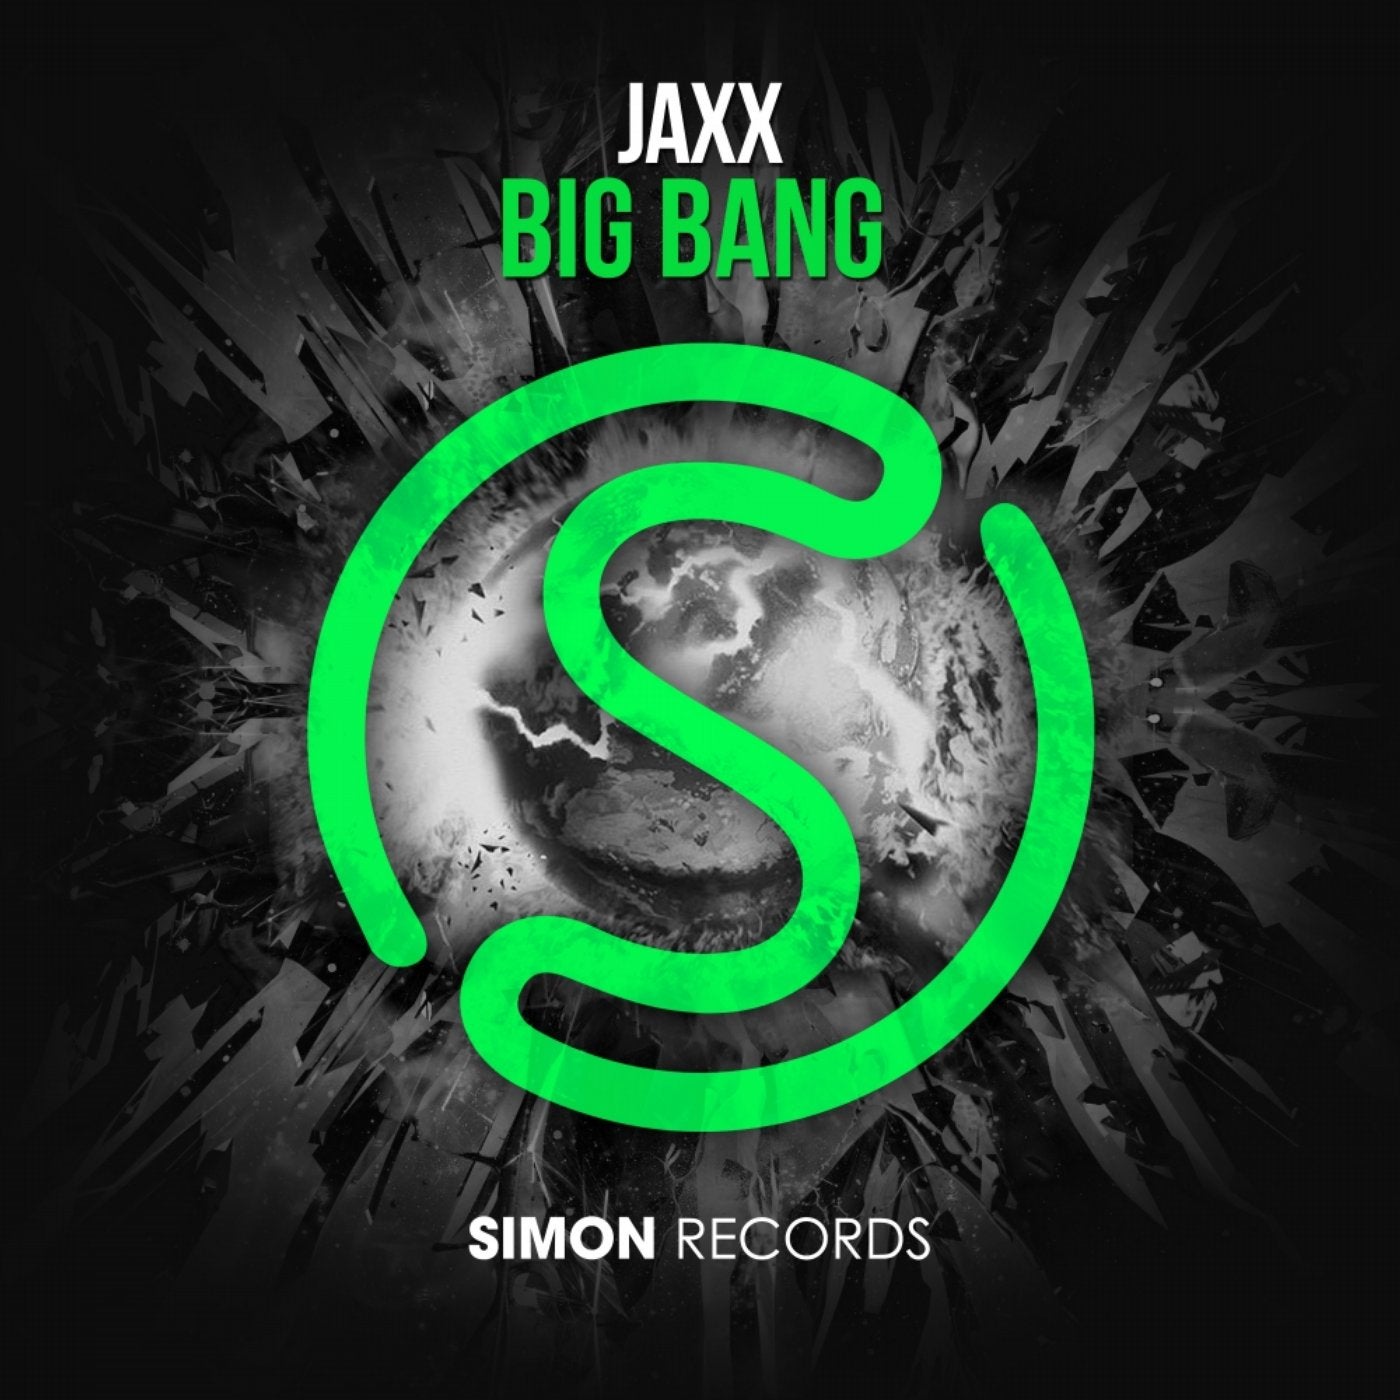 Bang originals. Big Bang обложки альбомов. Jaxx. Jaxx арты. Big Bang Bang Bang обложка альбома.